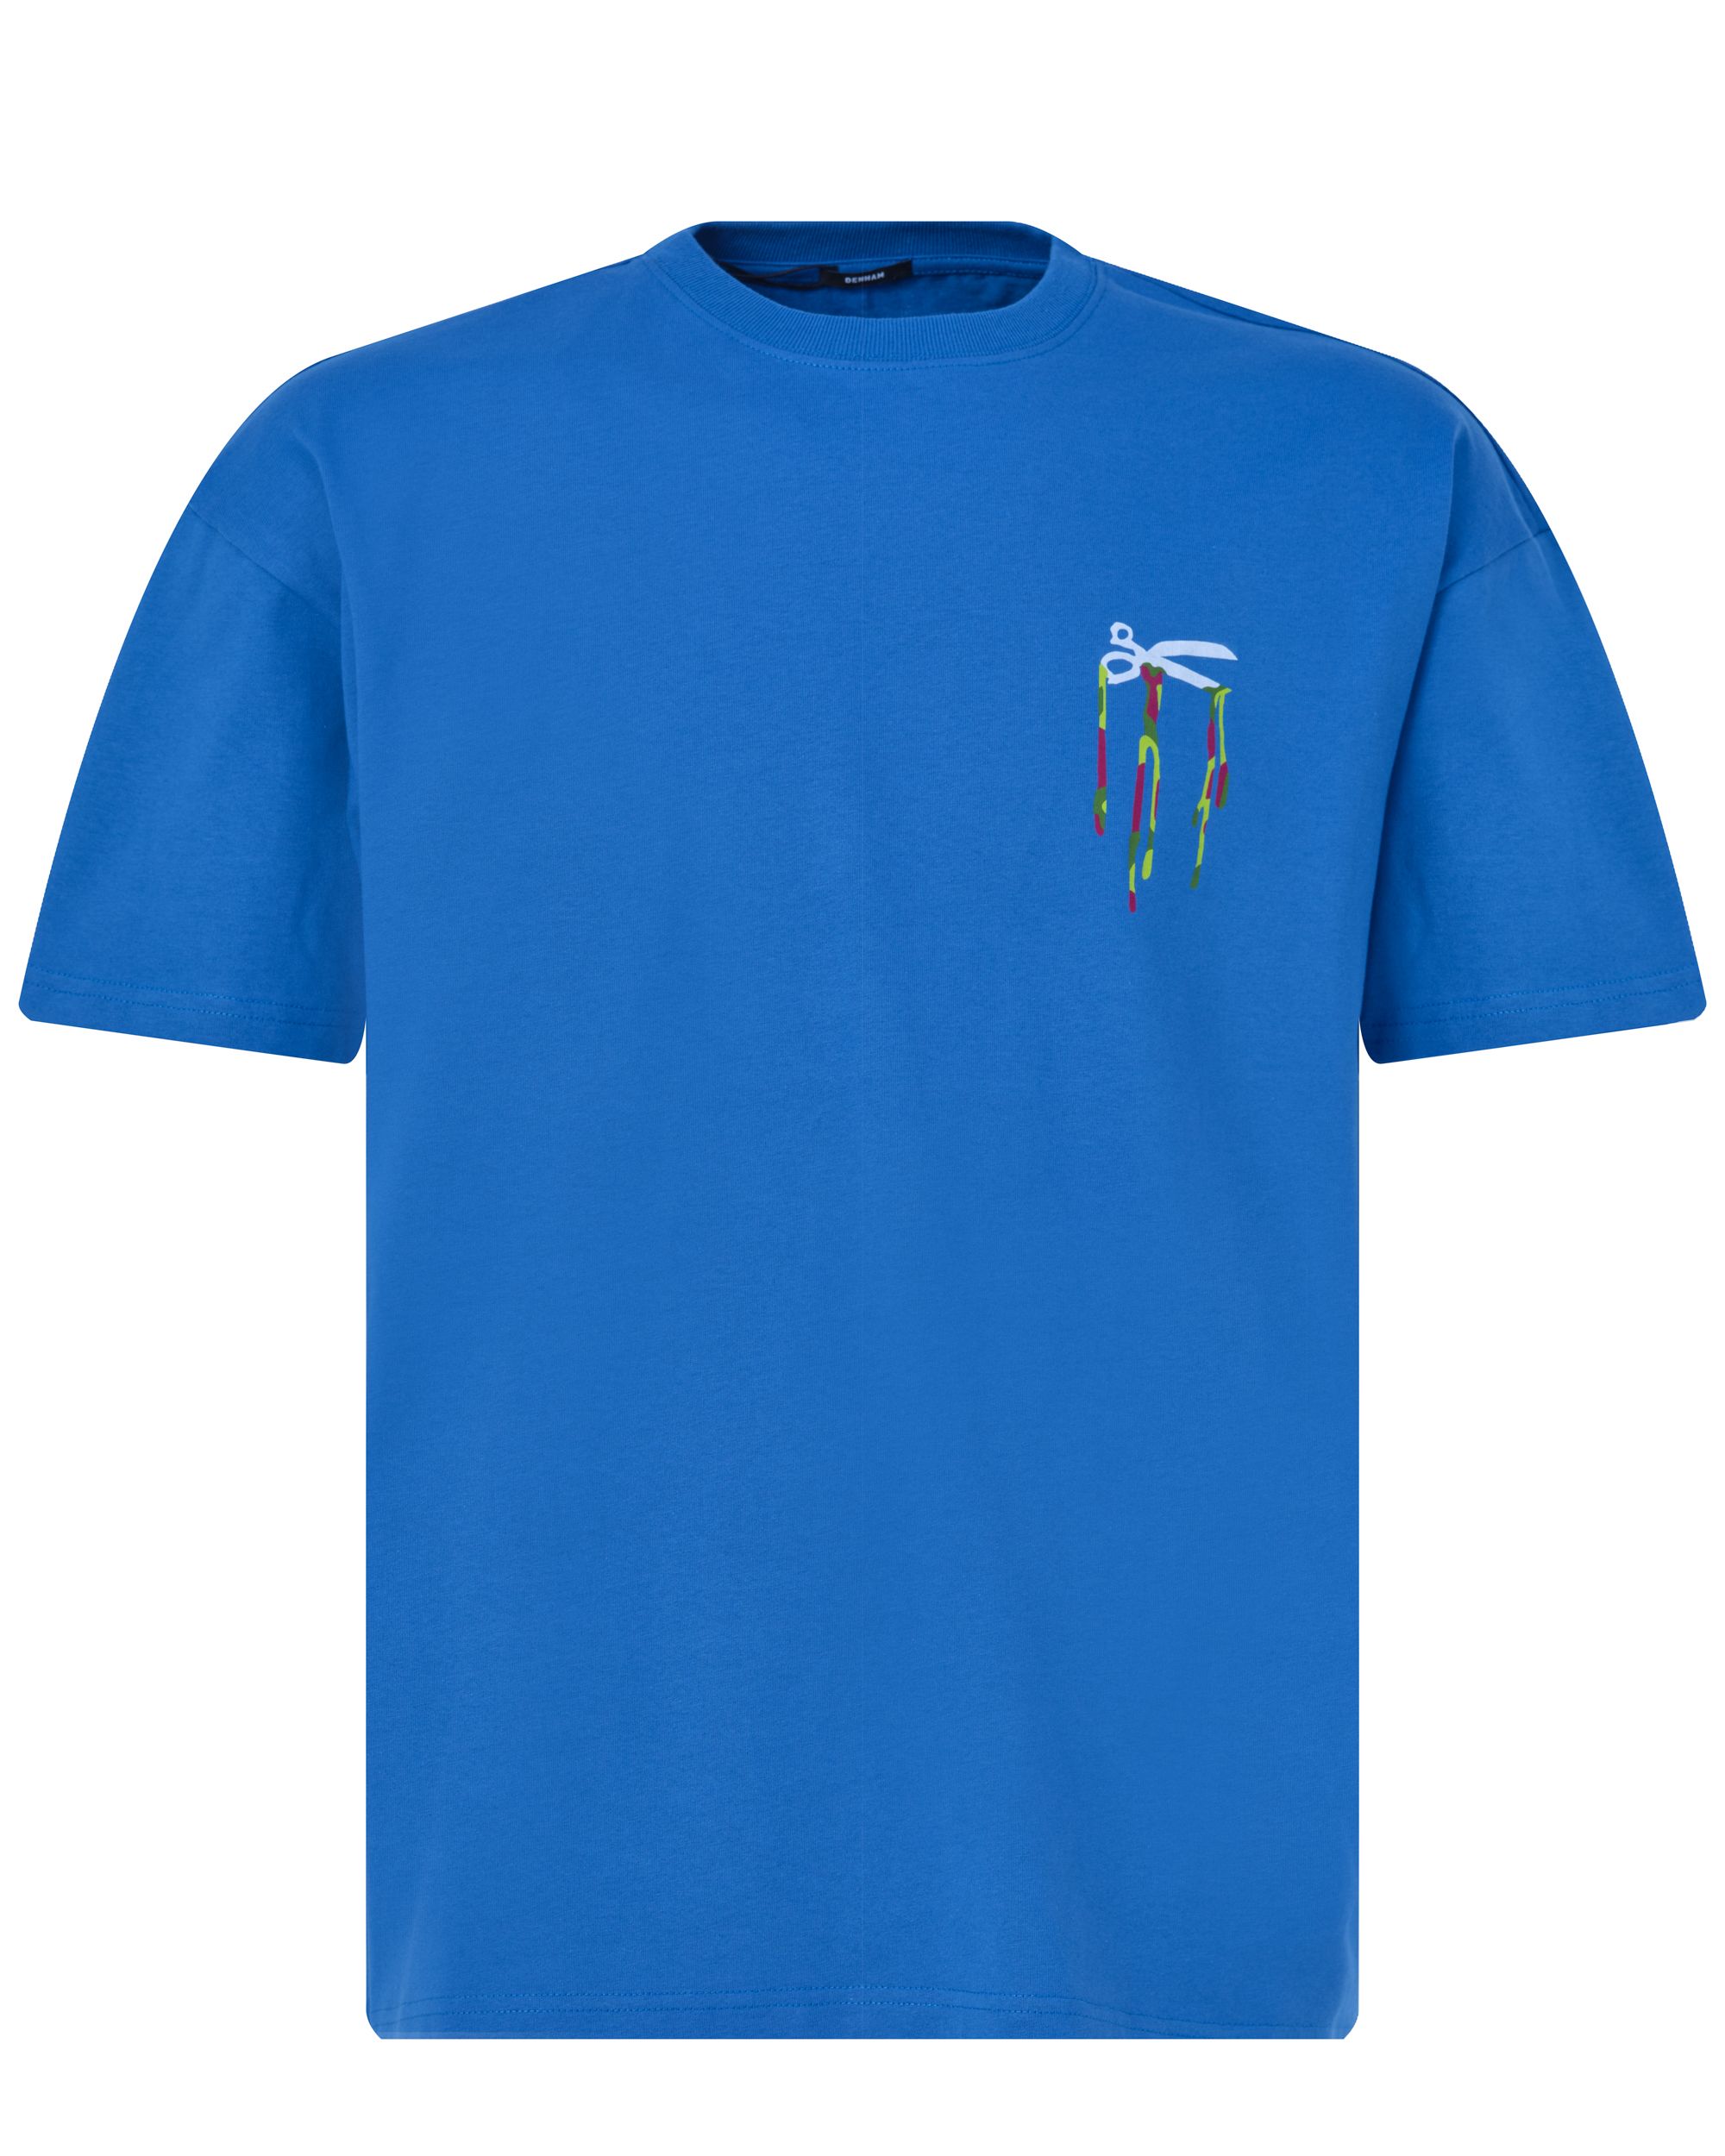 DENHAM Drip Box T-shirt KM Kobalt 089102-001-L